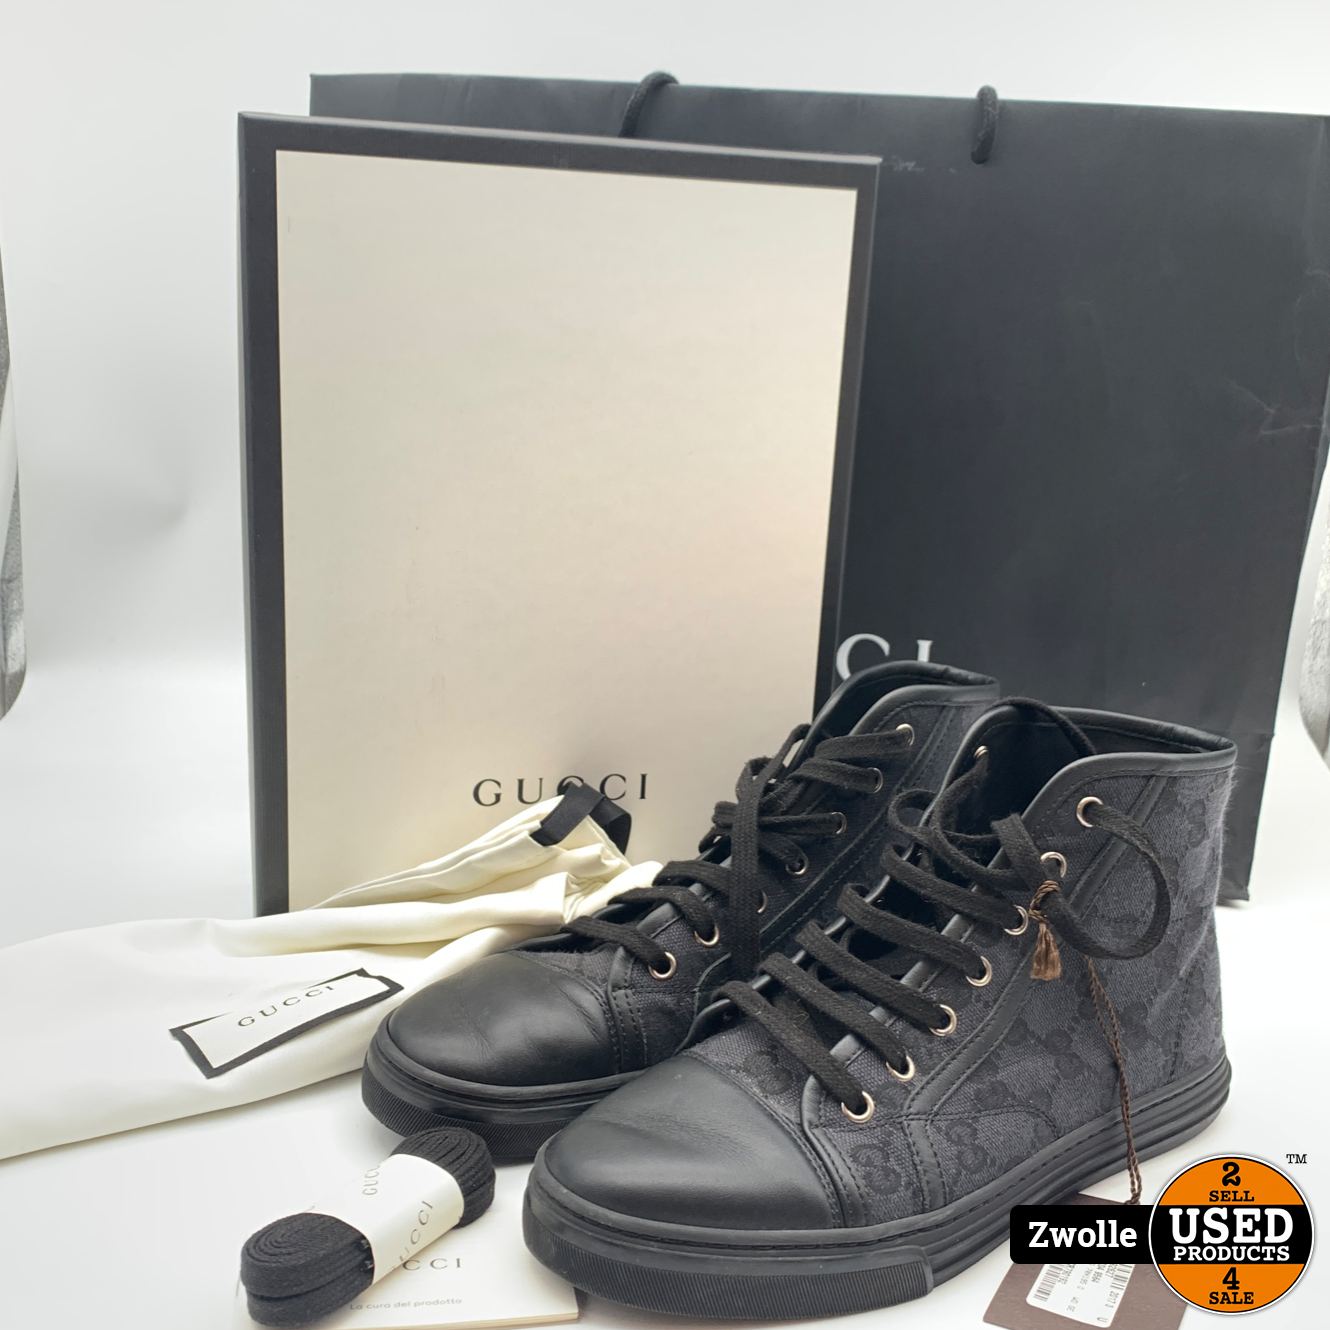 Gucci schoenen compleet in doos maat - Products Zwolle